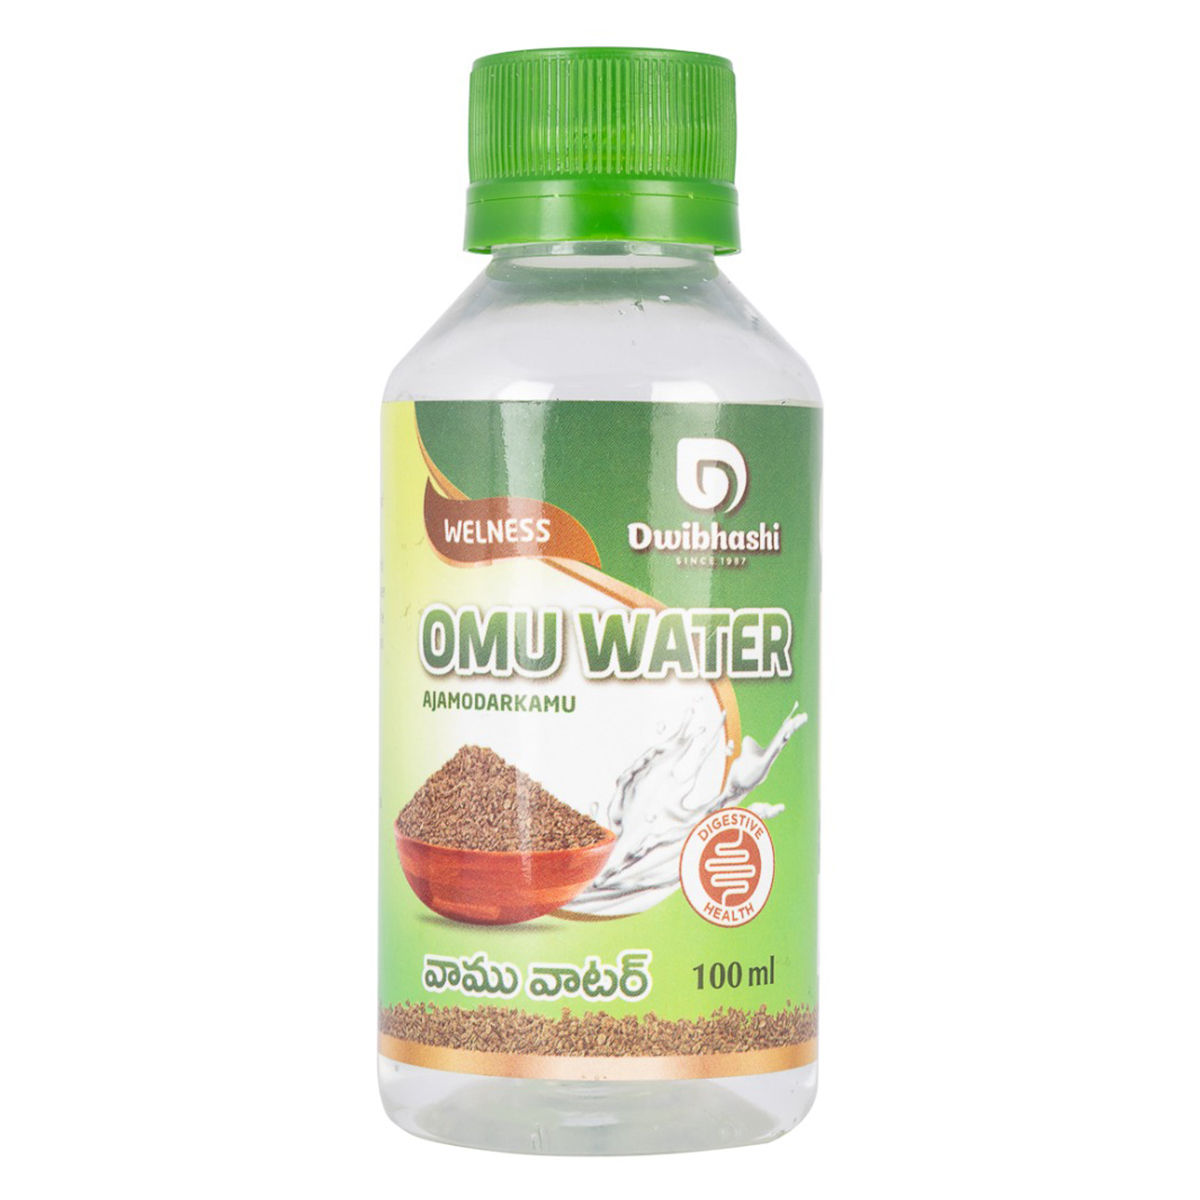 Buy OMU Water, 100 ml Online